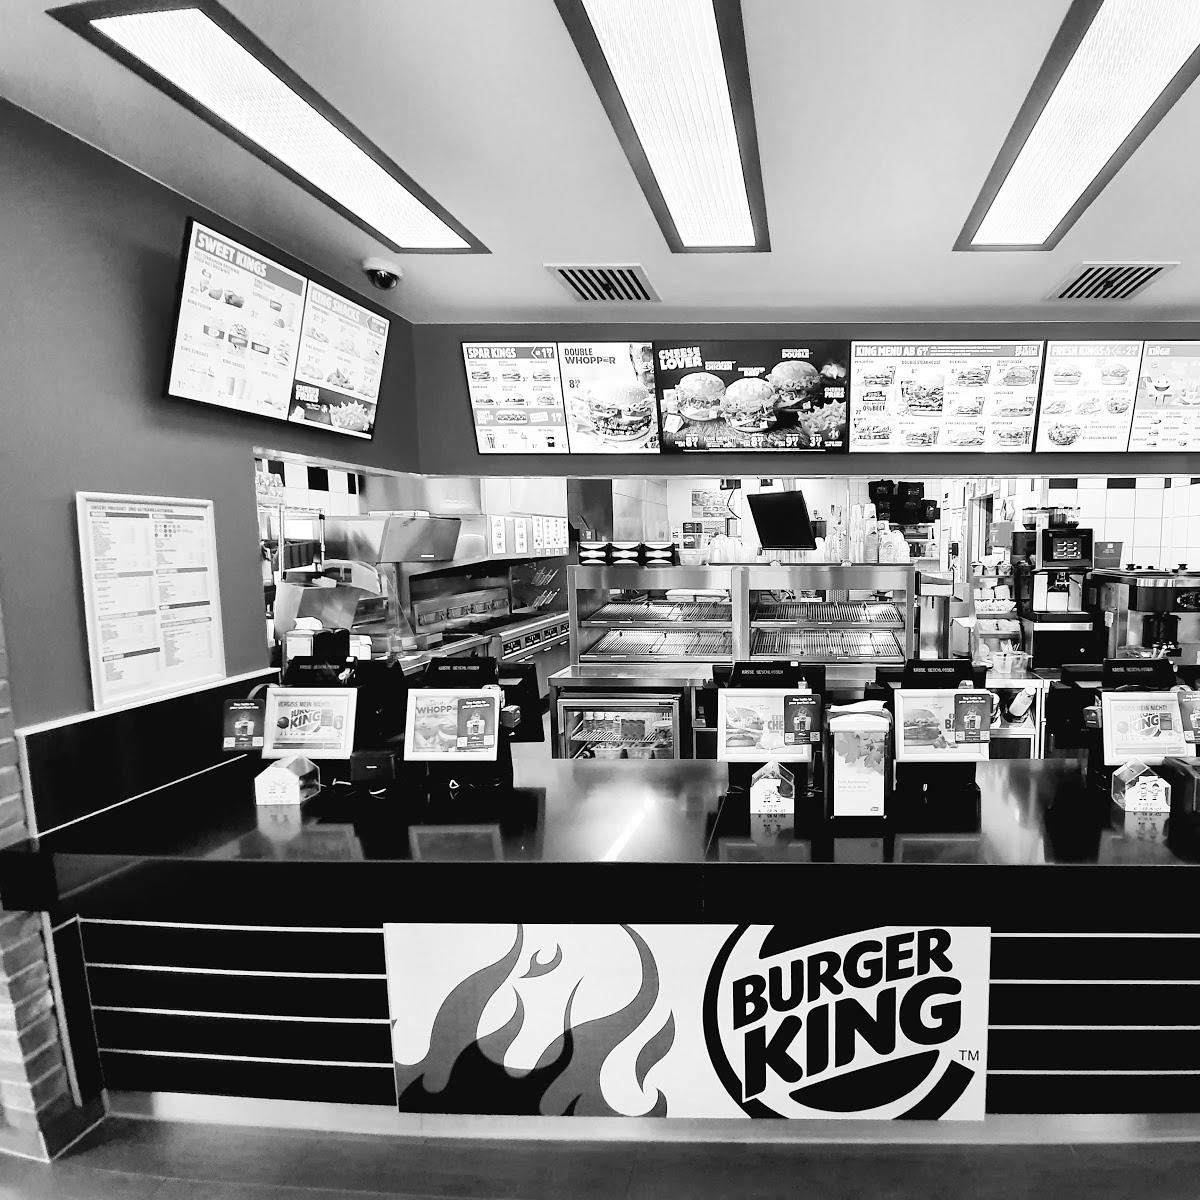 Restaurant "Burger King (Drive-in)" in Freiburg im Breisgau